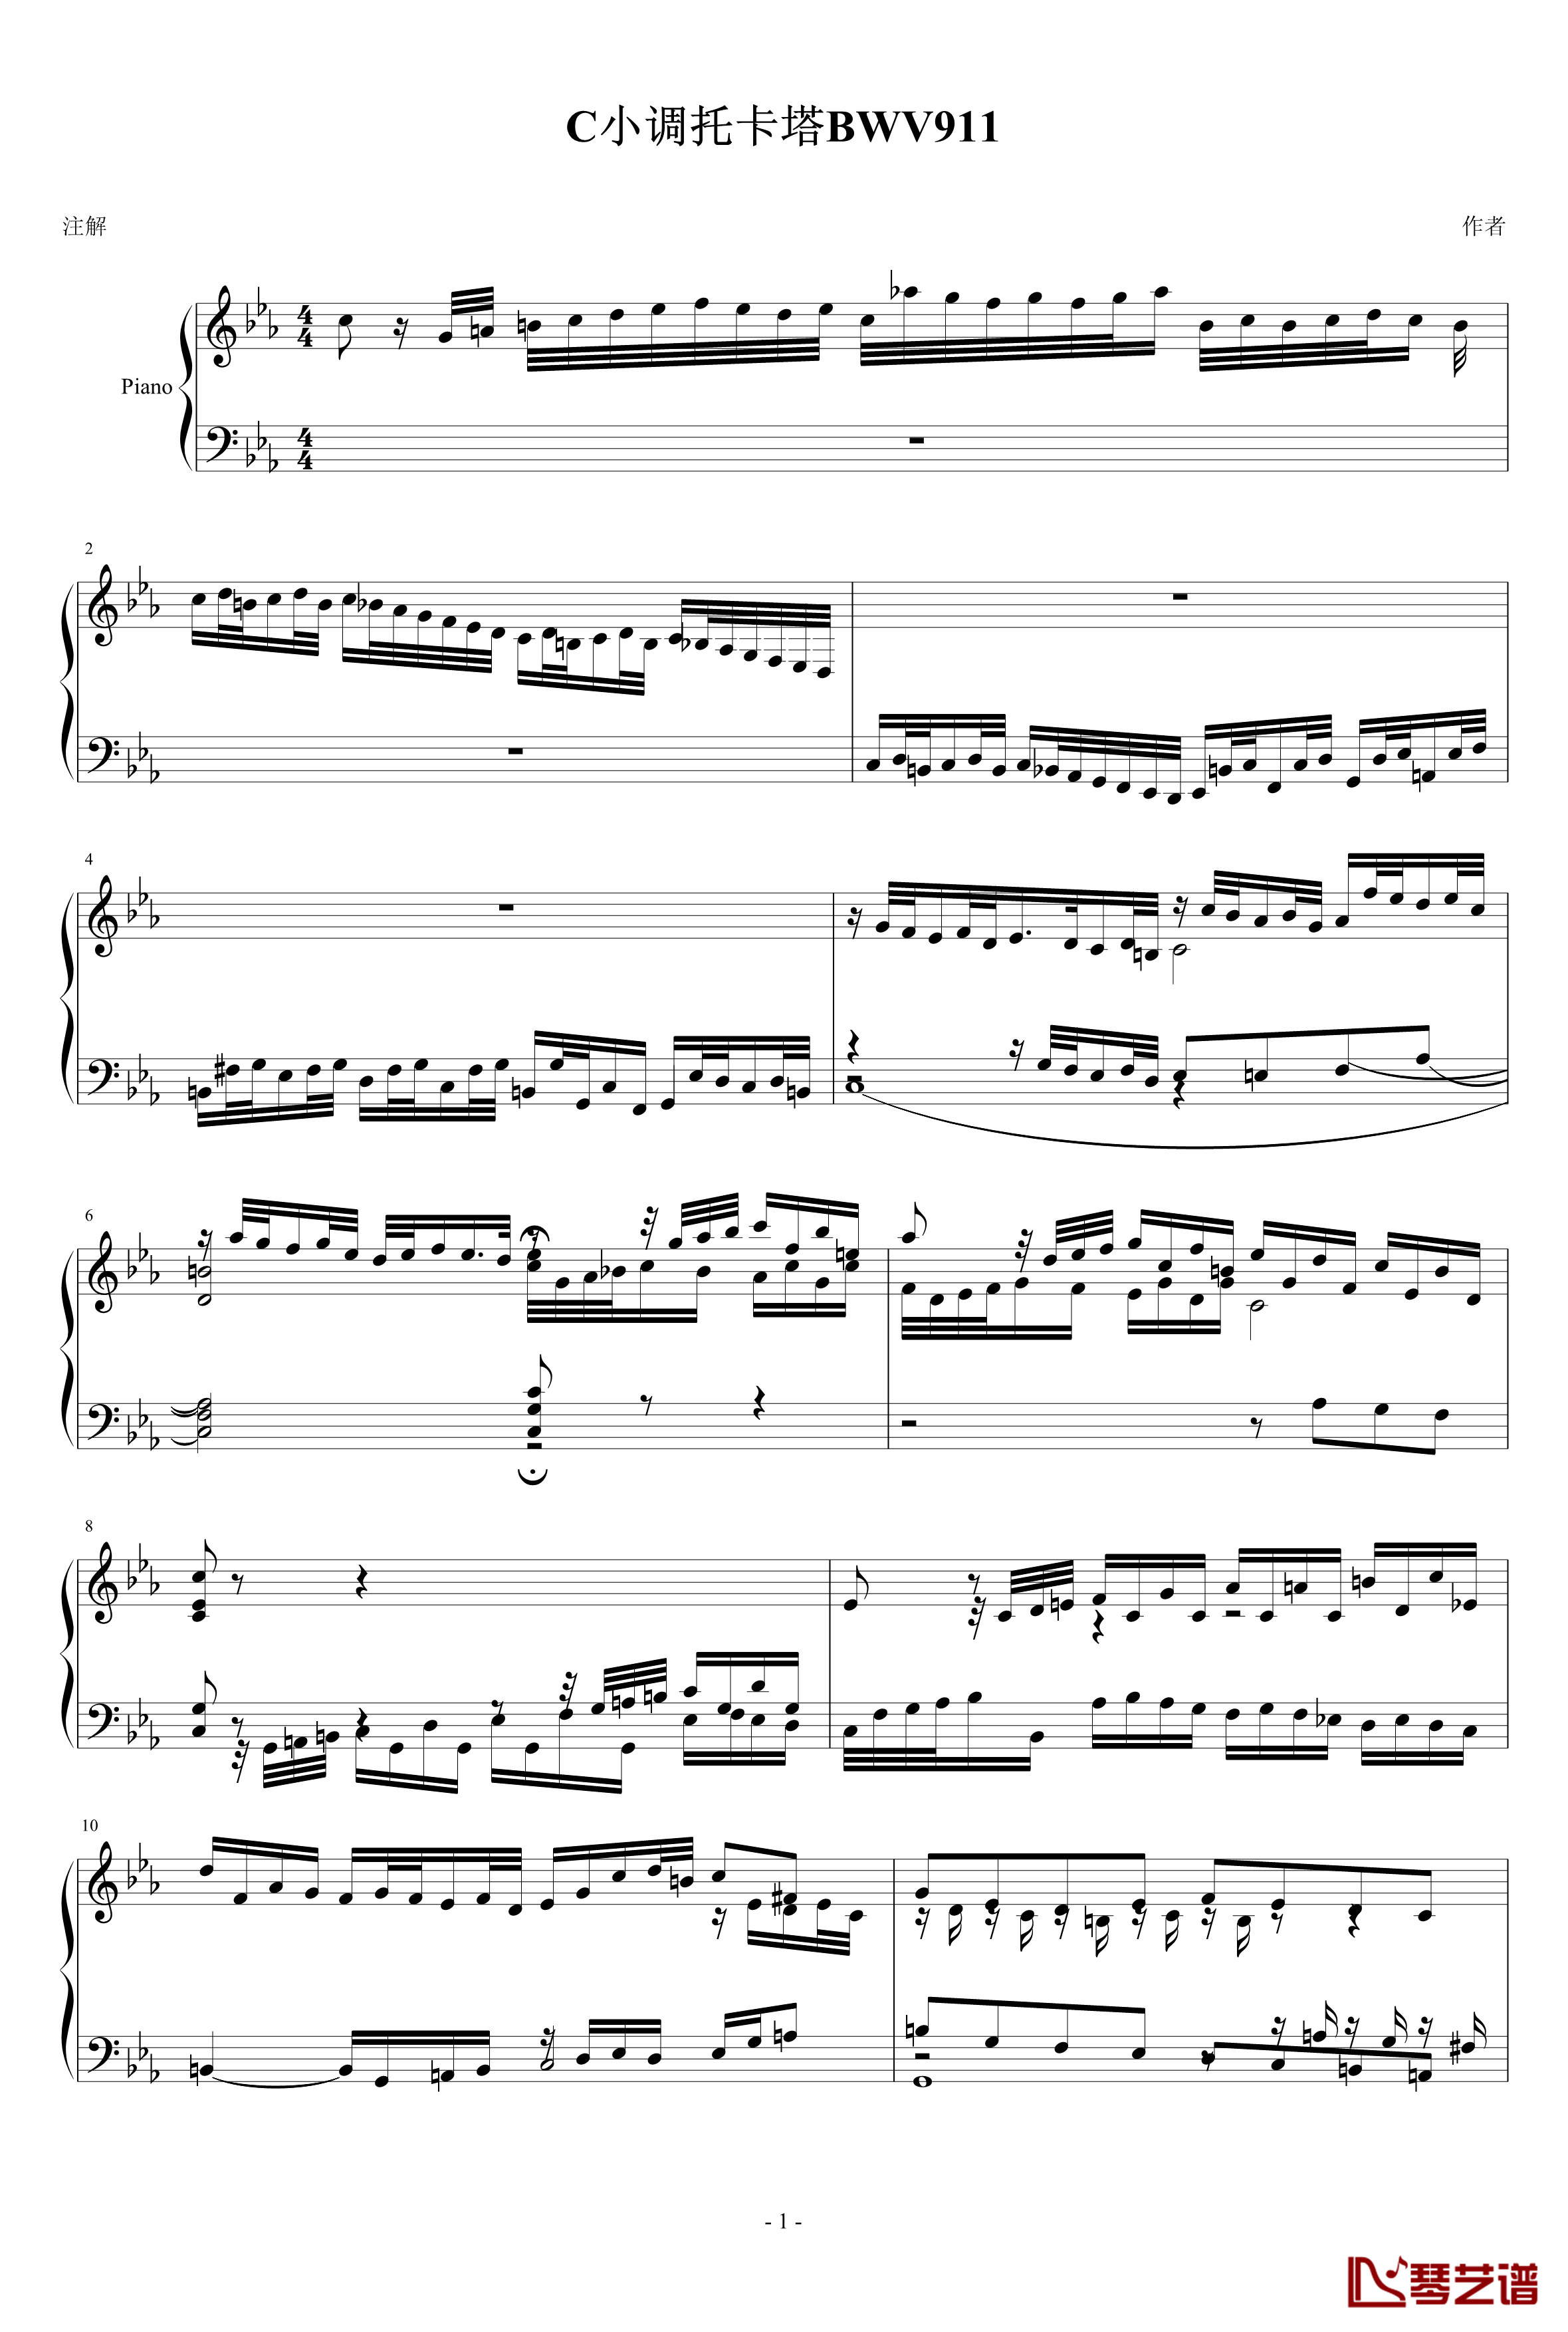 C小调托卡塔BWV911钢琴谱-雅克·奥芬巴赫1